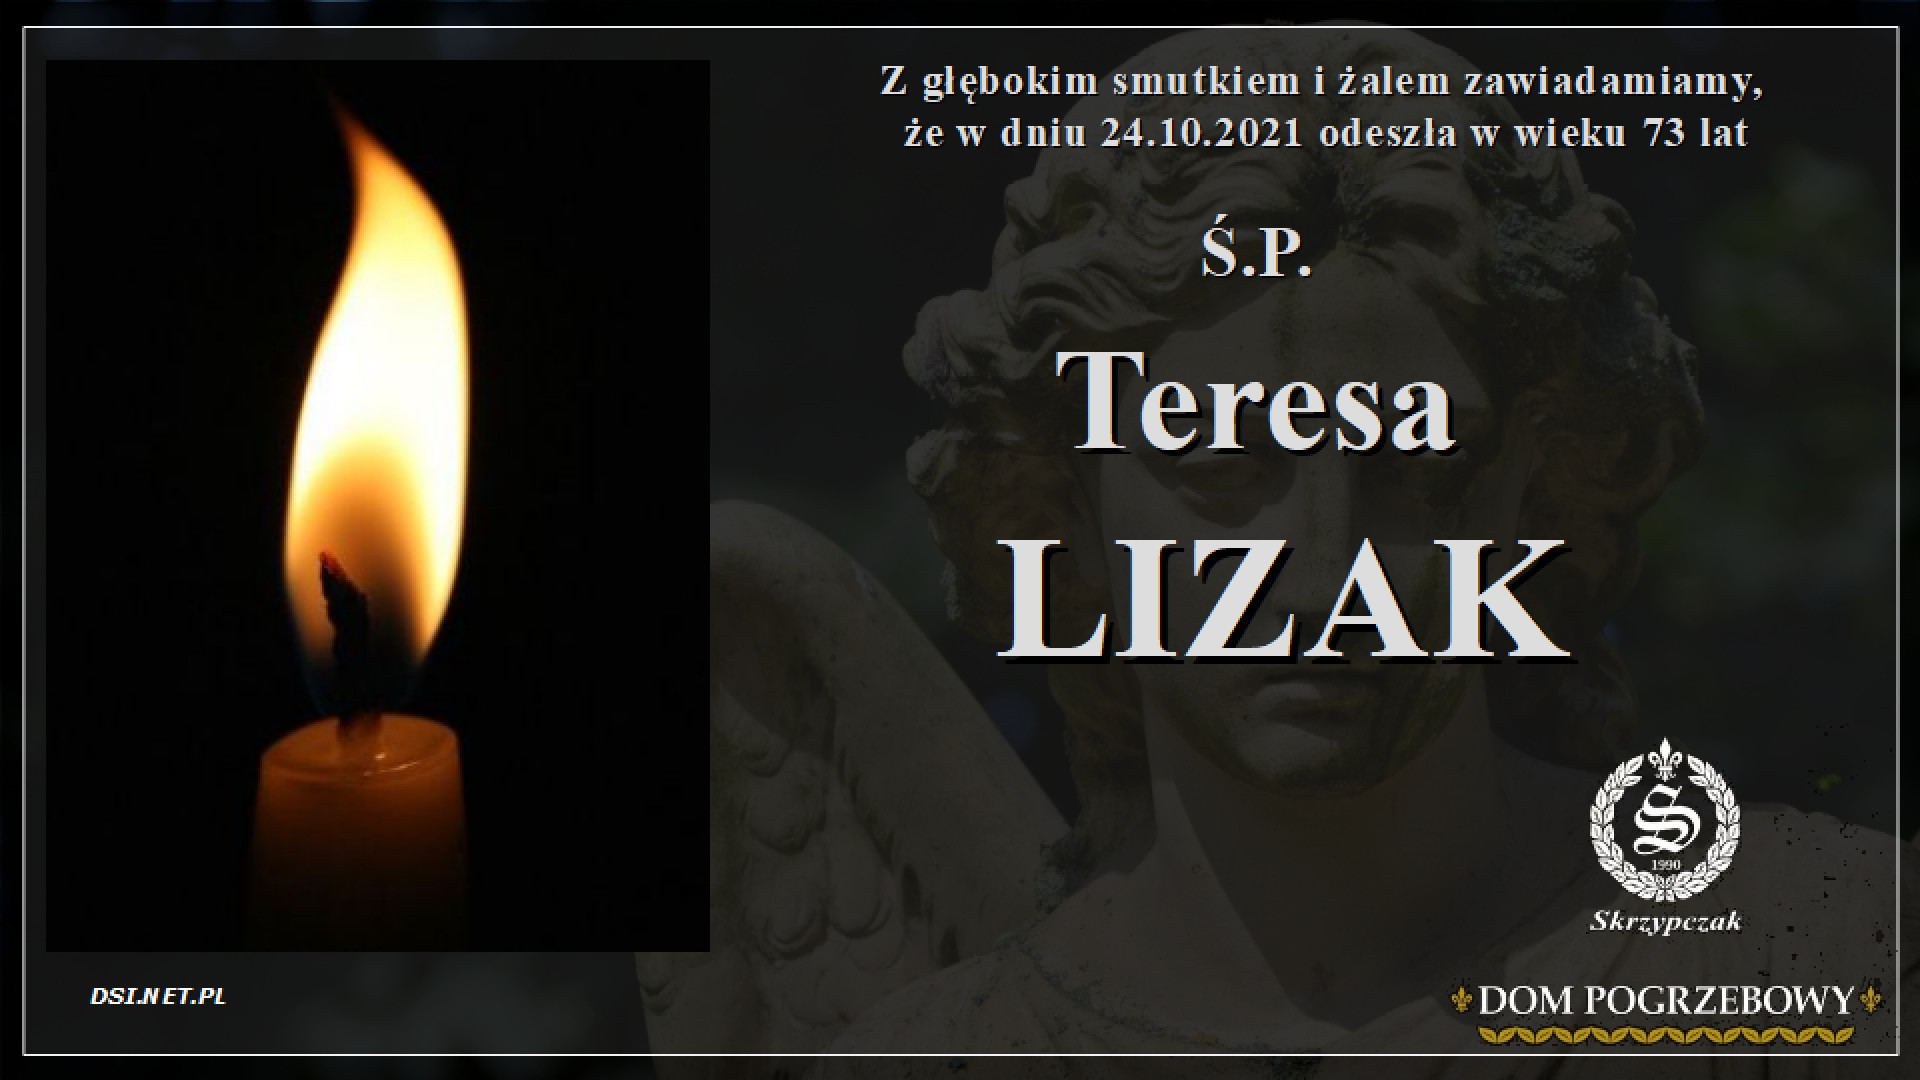 Ś.P. Teresa Lizak